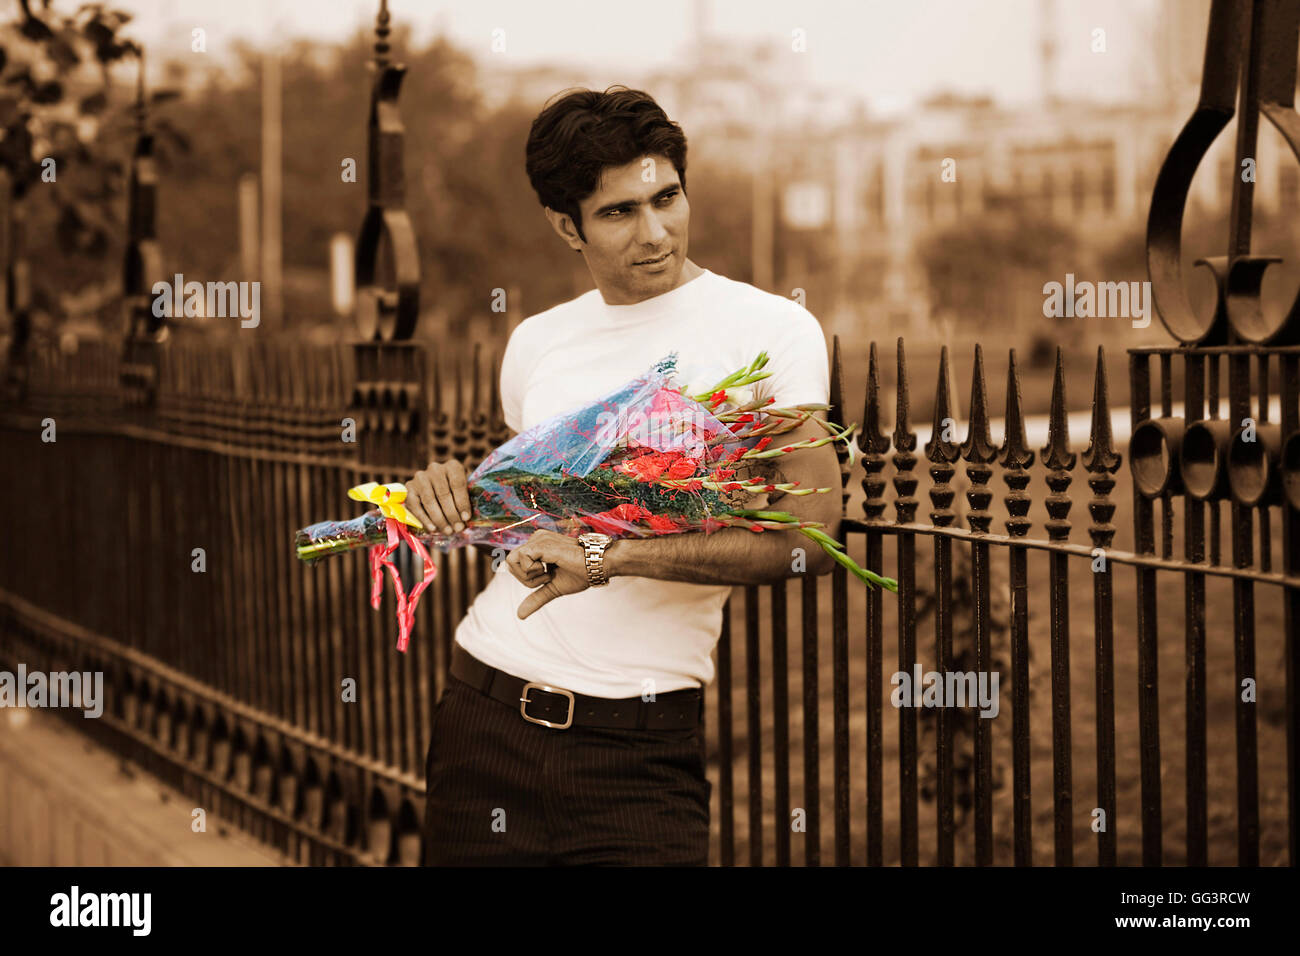 Hombre esperando con un ramo de flores Foto de stock